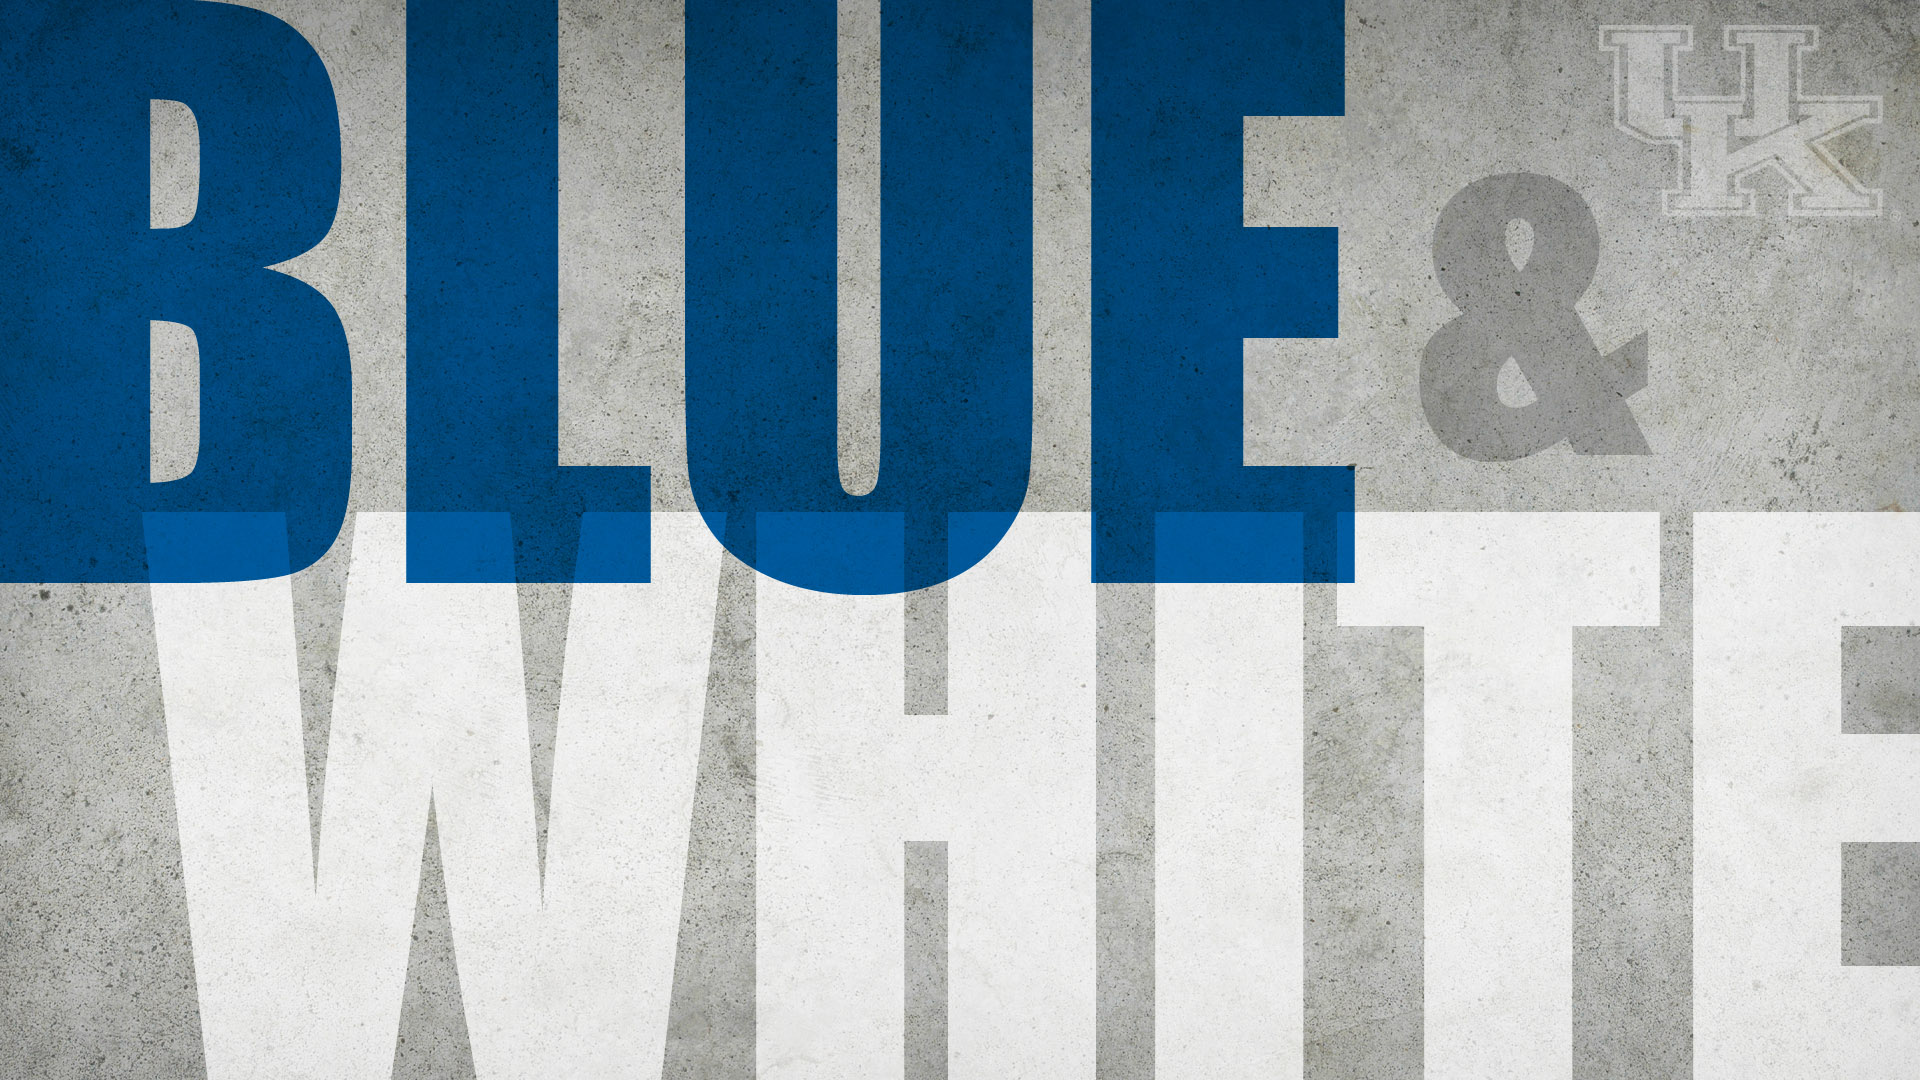 Blue White